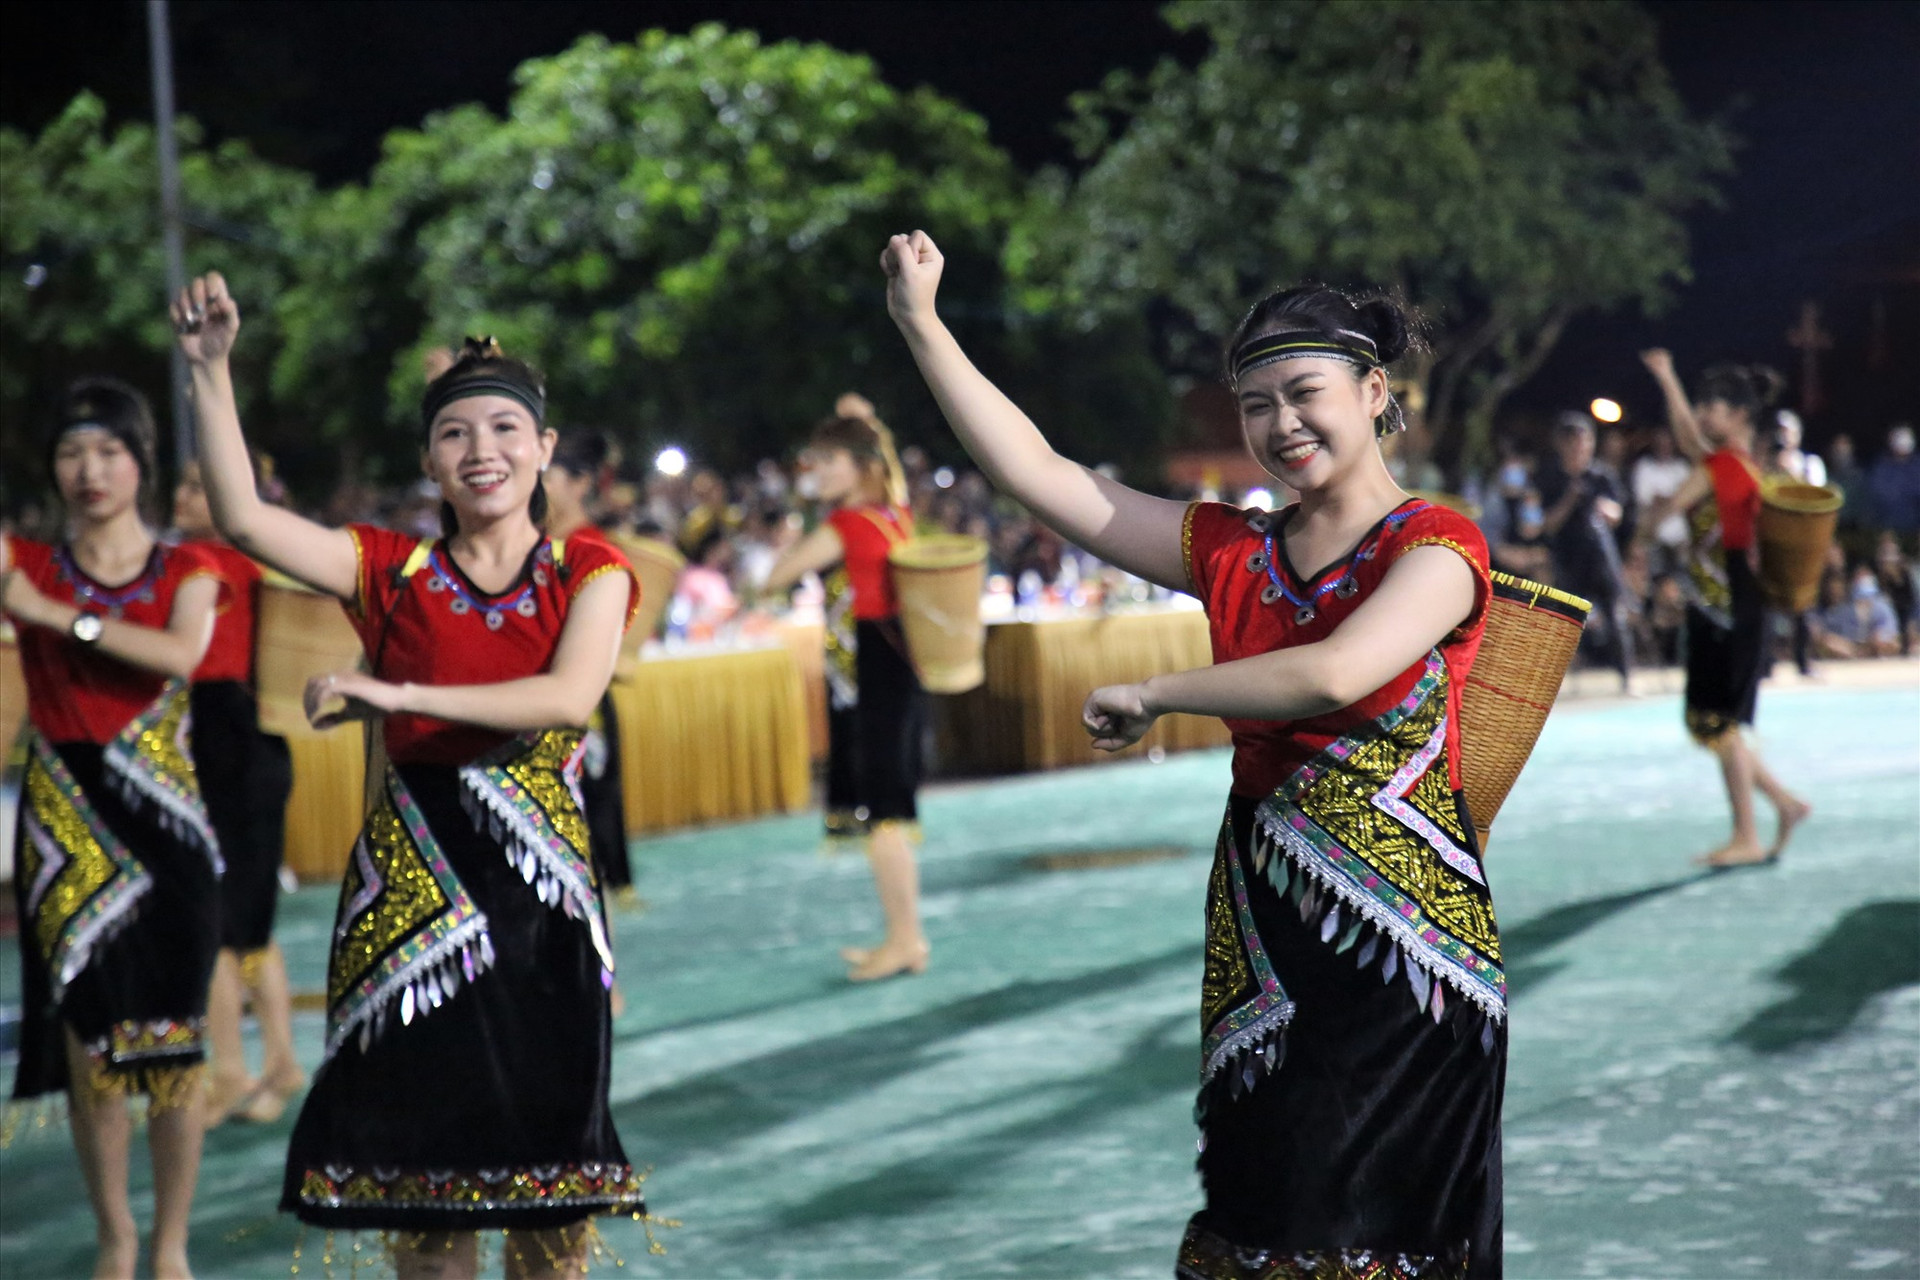 Những điệu múa truyền thống được trình diễn, tạo nên dấu ấn đặc biệt trong lòng du khách và người dân địa phương. Ảnh: A.N